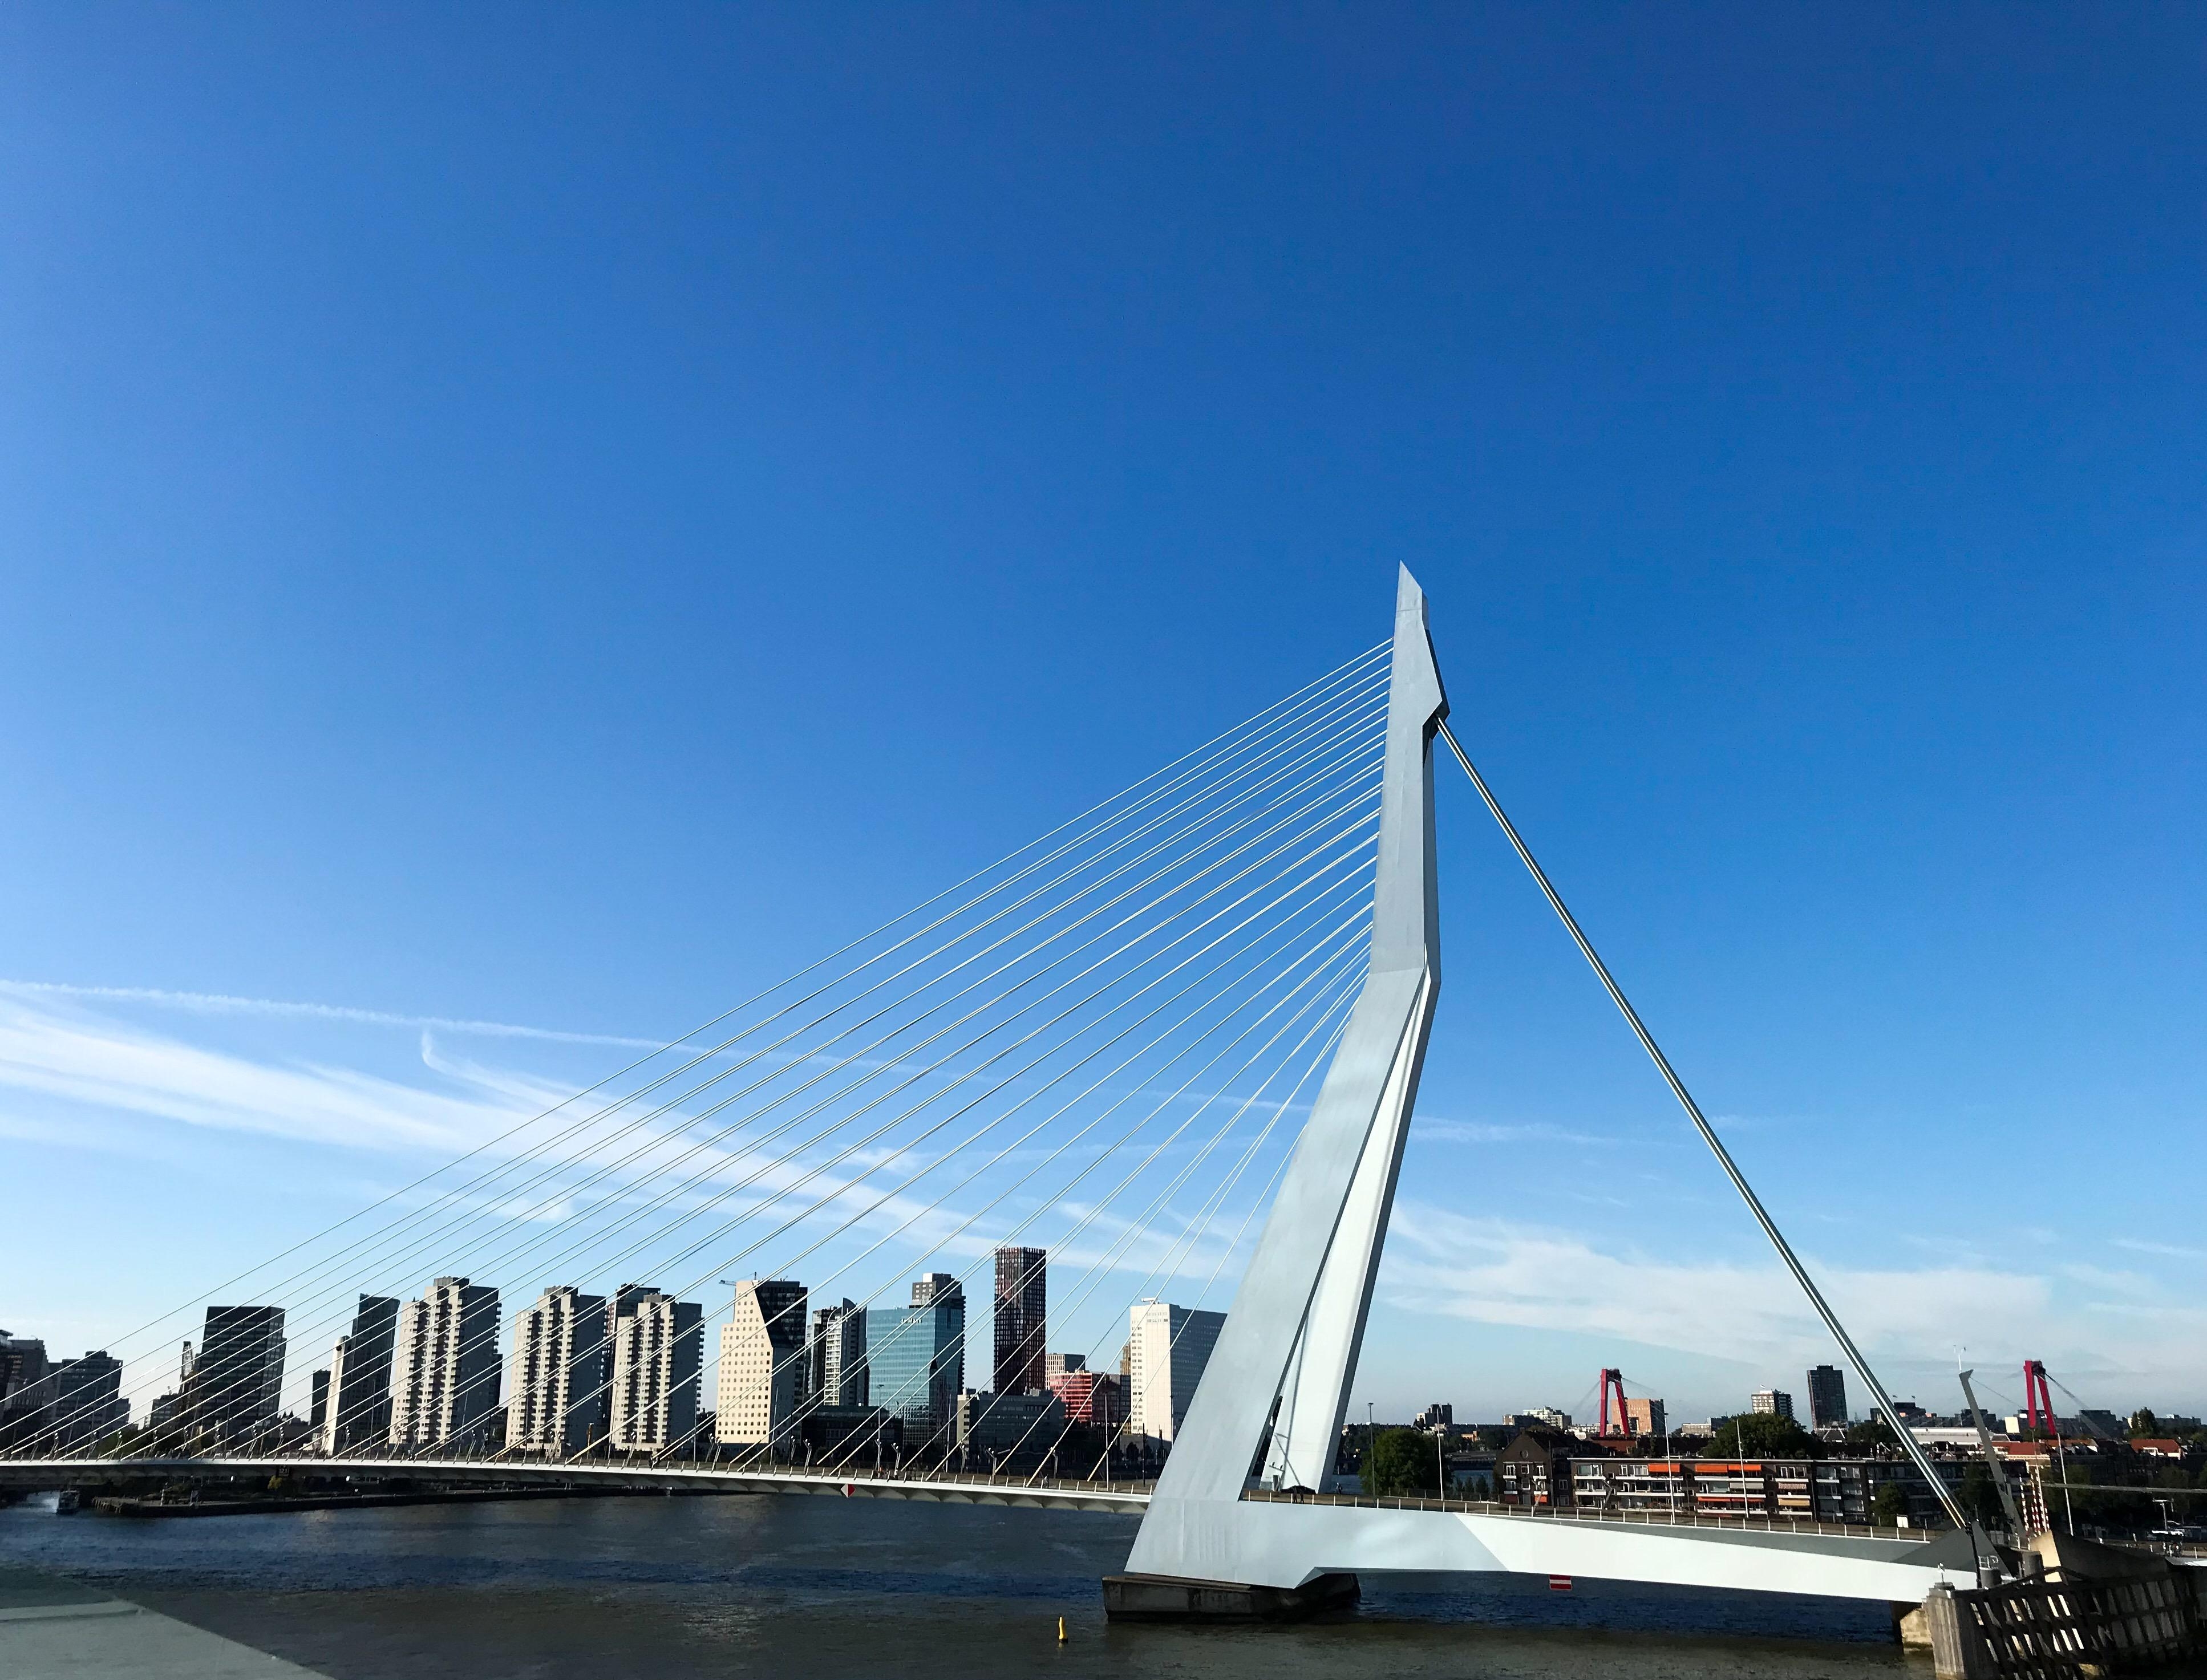 Ich war bereits im #Urlaub Und besonders begeistert hat mich #rotterdam ! Auf dem Bild die #erasmusbrücke #Städtereise